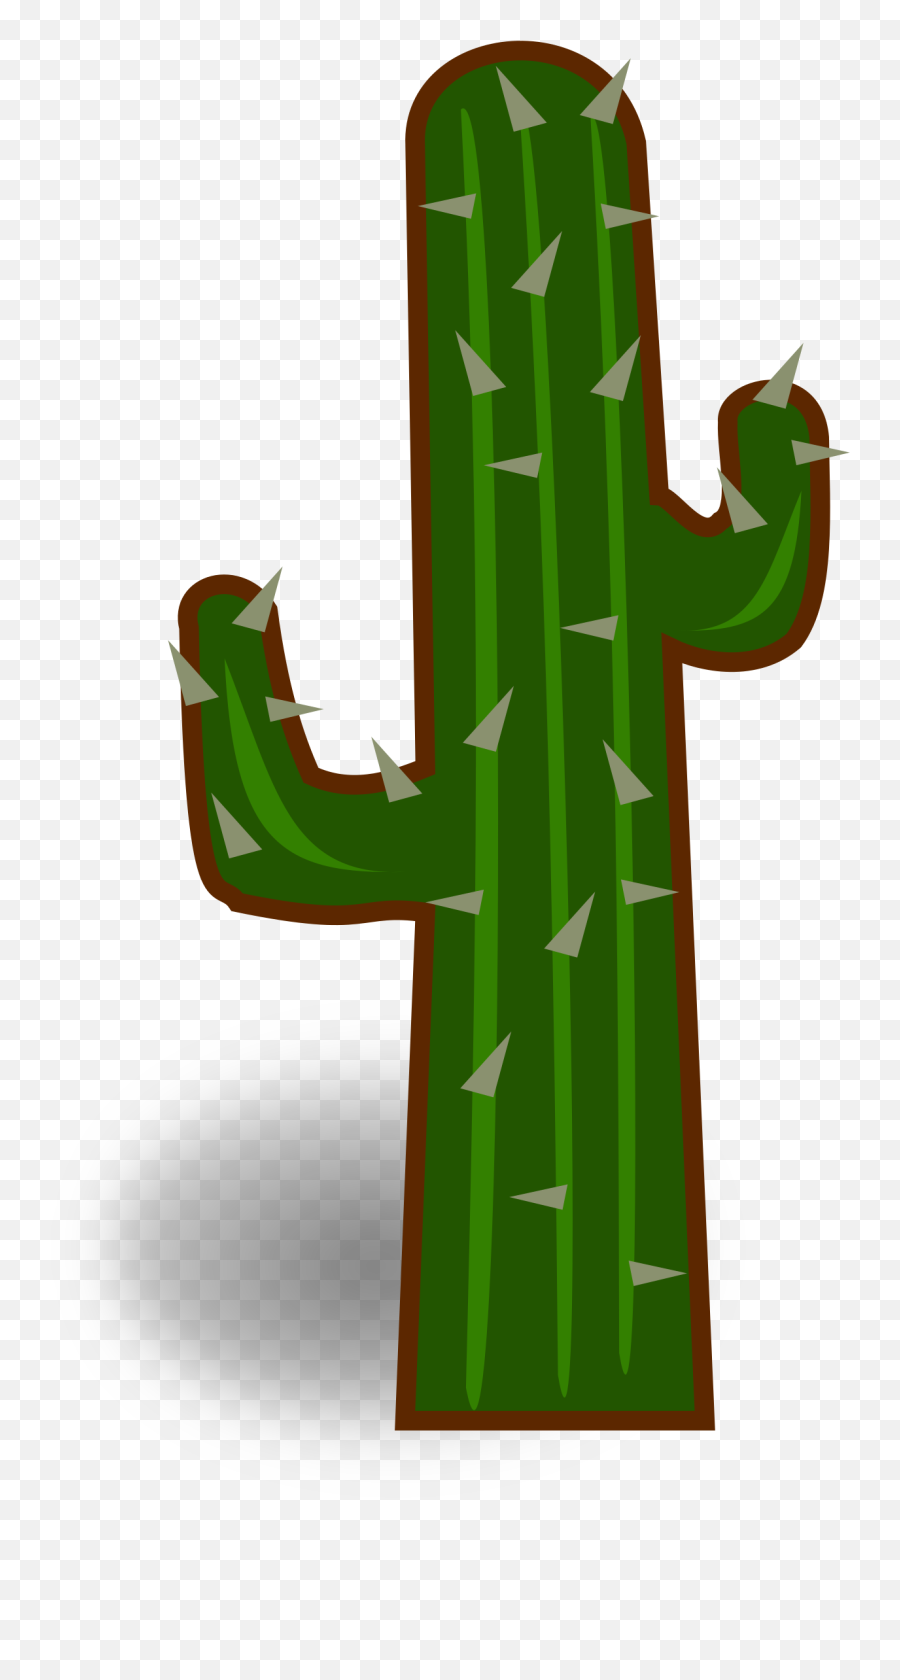 Cactus Clipart Png 4 Image - Cactus Clipart Transparent Background,Cactus Clipart Png